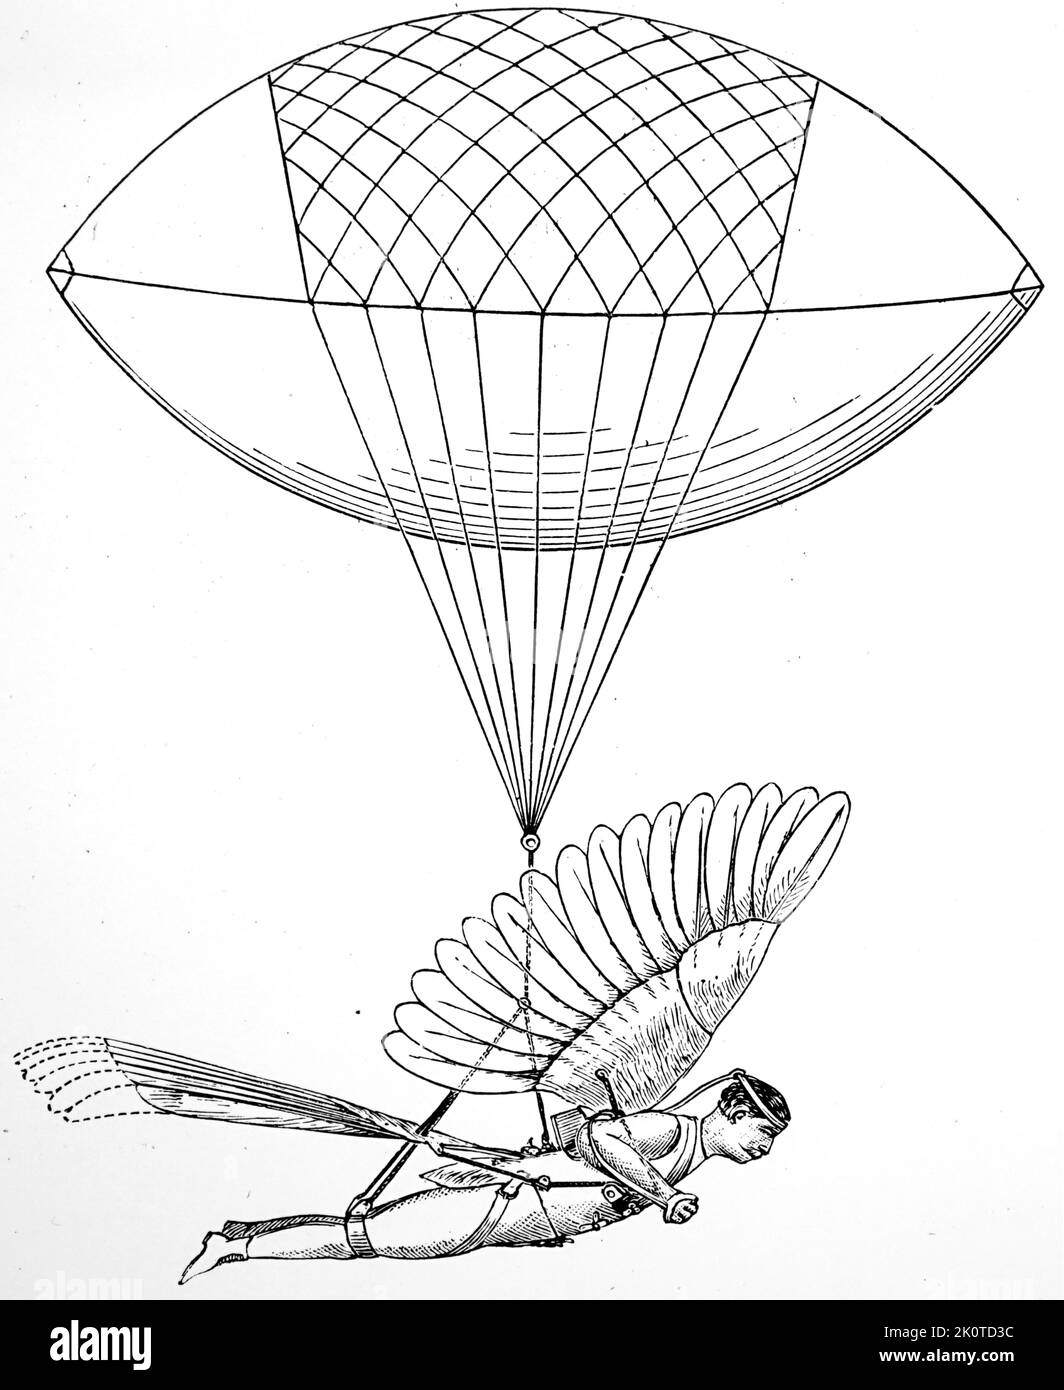 Reuben Jasper Spalding (1889) metodo di trasporto rapido e diretto; un ornitoper azionato elettricamente. Da Der Stein der Weisen, (1895 ca.). Foto Stock